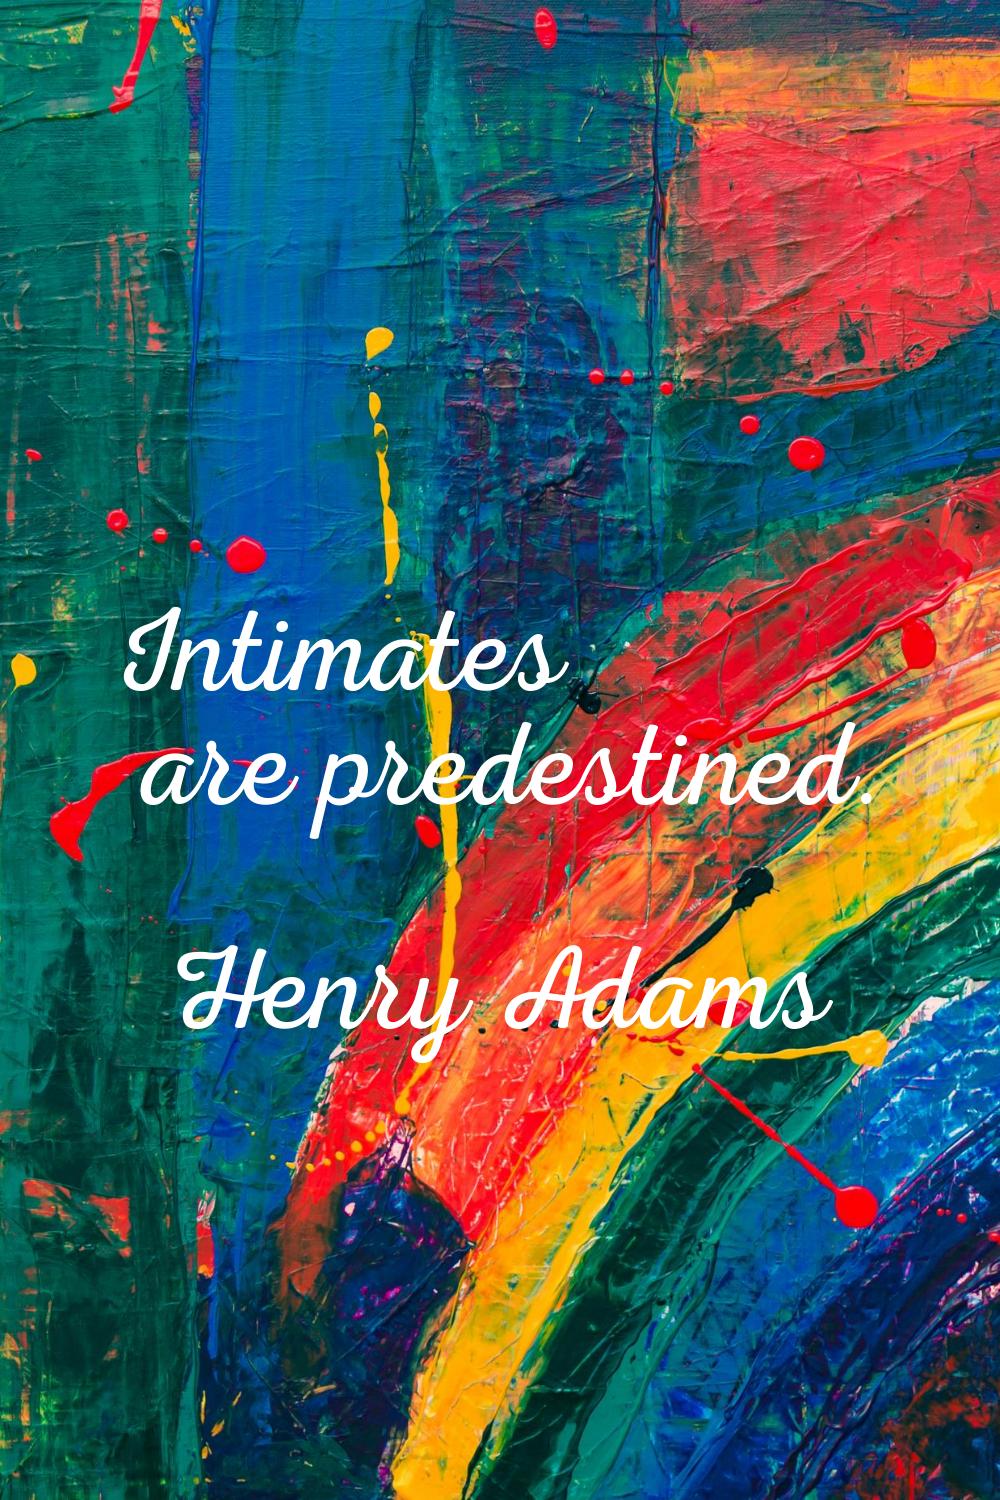 Intimates are predestined.